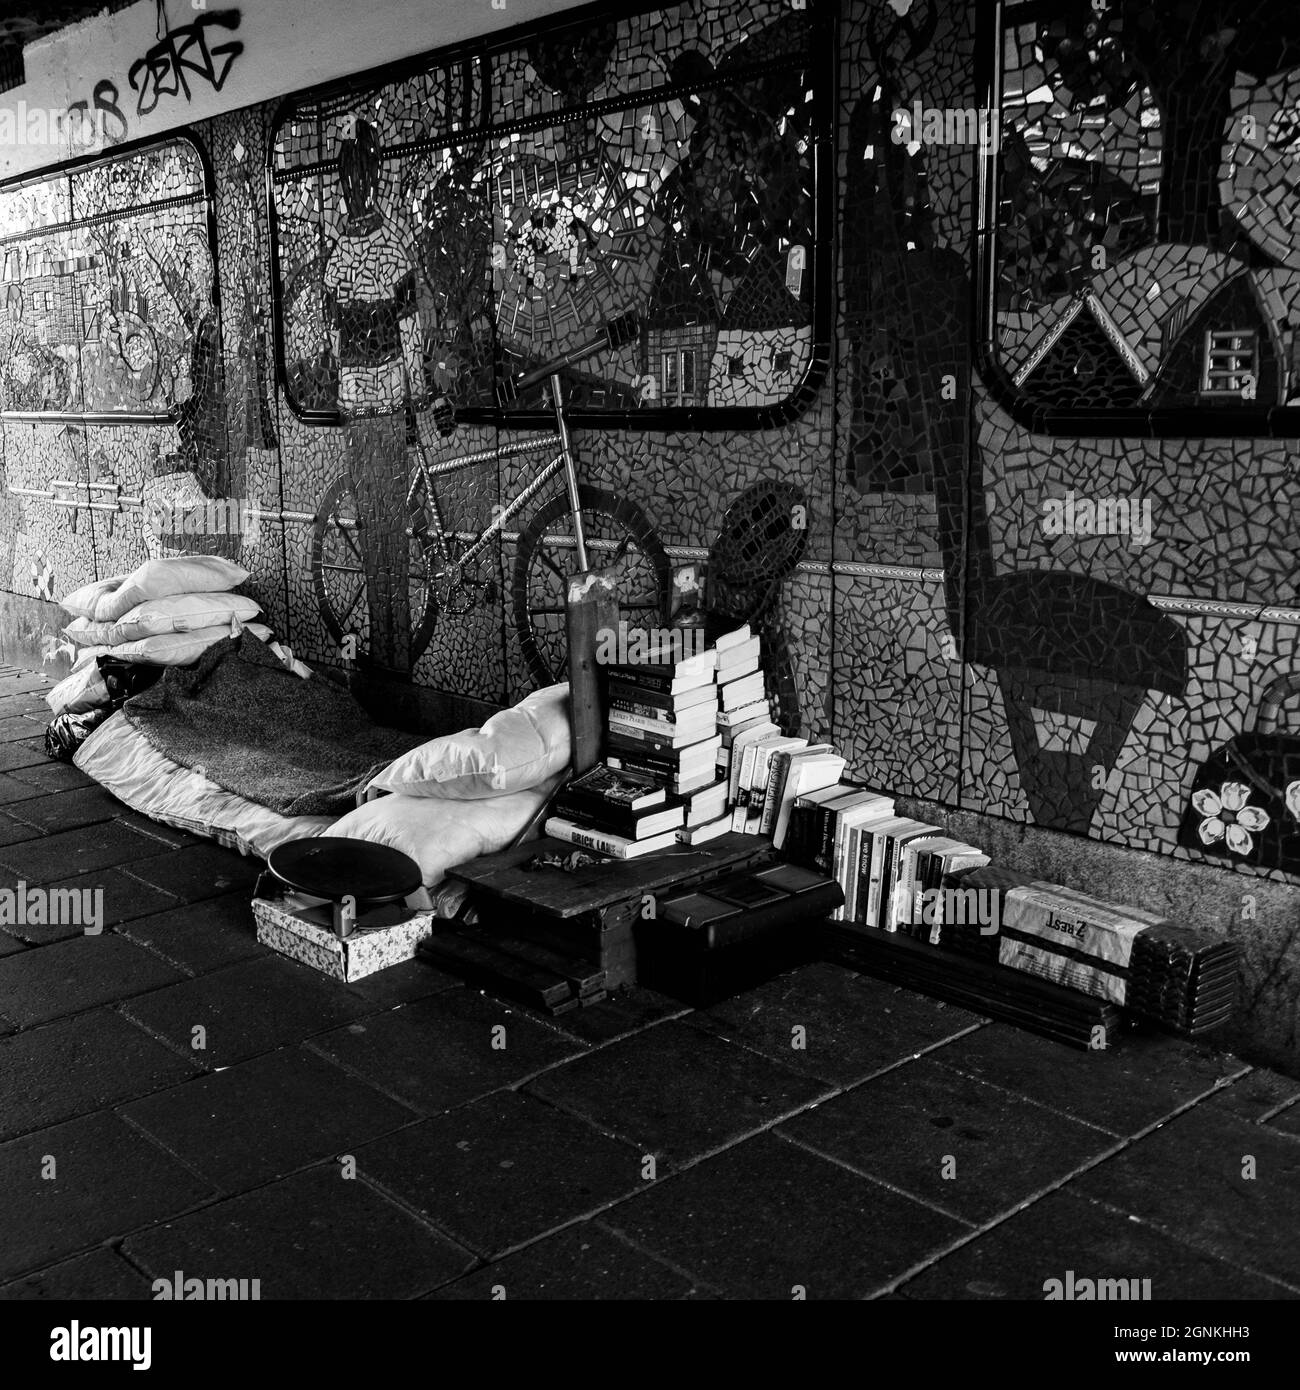 Abstract Schwarz-Weiß-Bild eines Obdachlosen Bett und Besitz unter Einer Eisenbahnbrücke in London, Großbritannien ohne Menschen Stockfoto